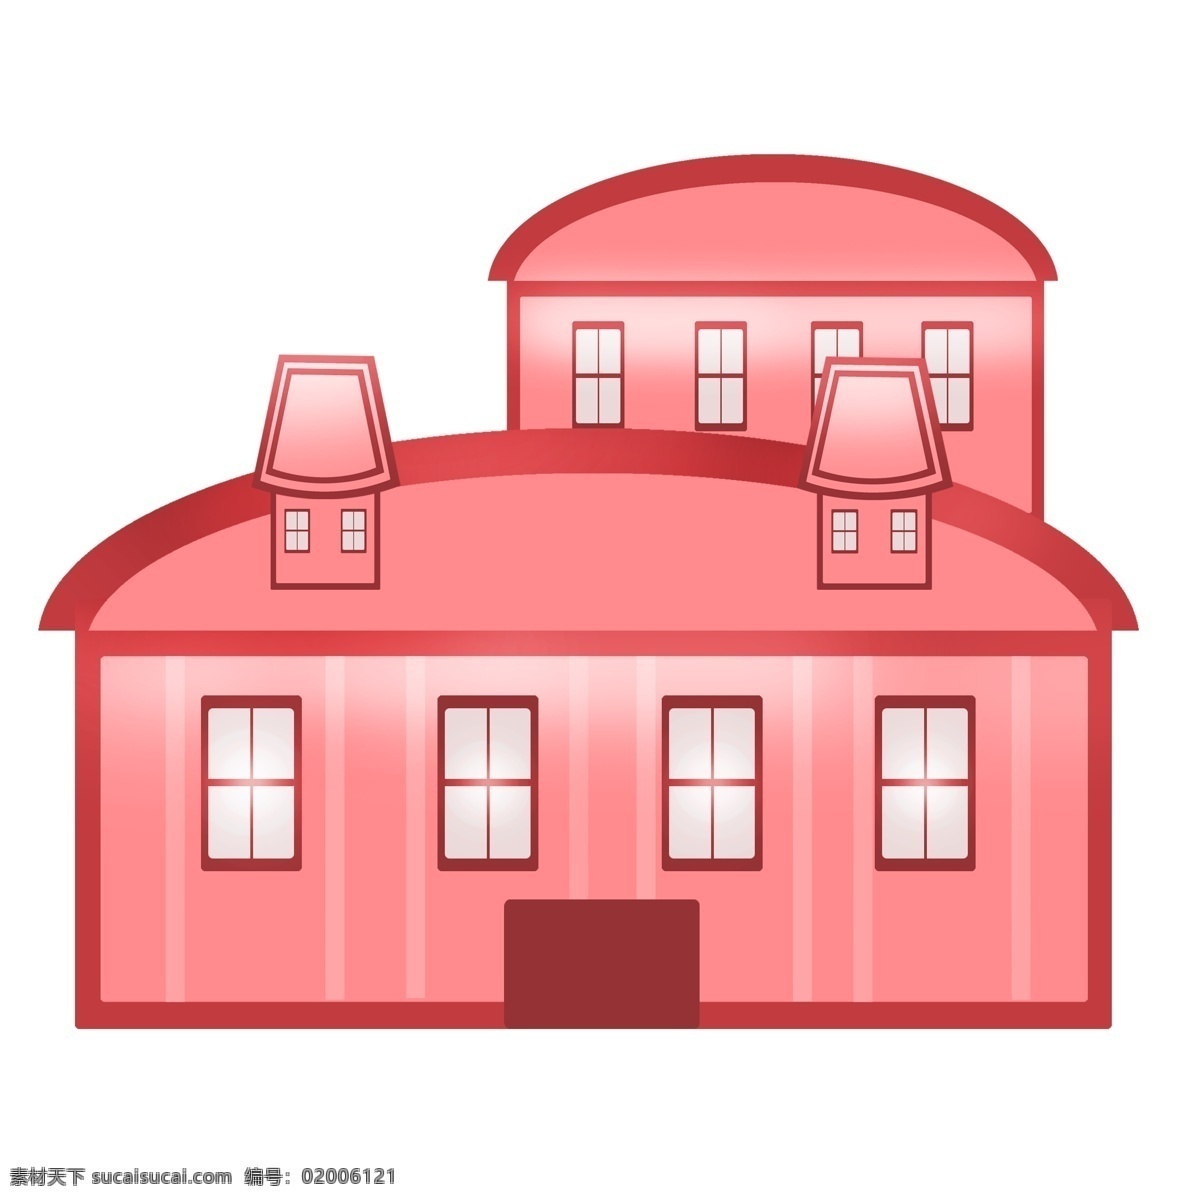 漂亮 红色 房子 插画 红色房子 建筑物 红色建筑物 现代建筑 居民房子 漂亮的房子 红色房子插画